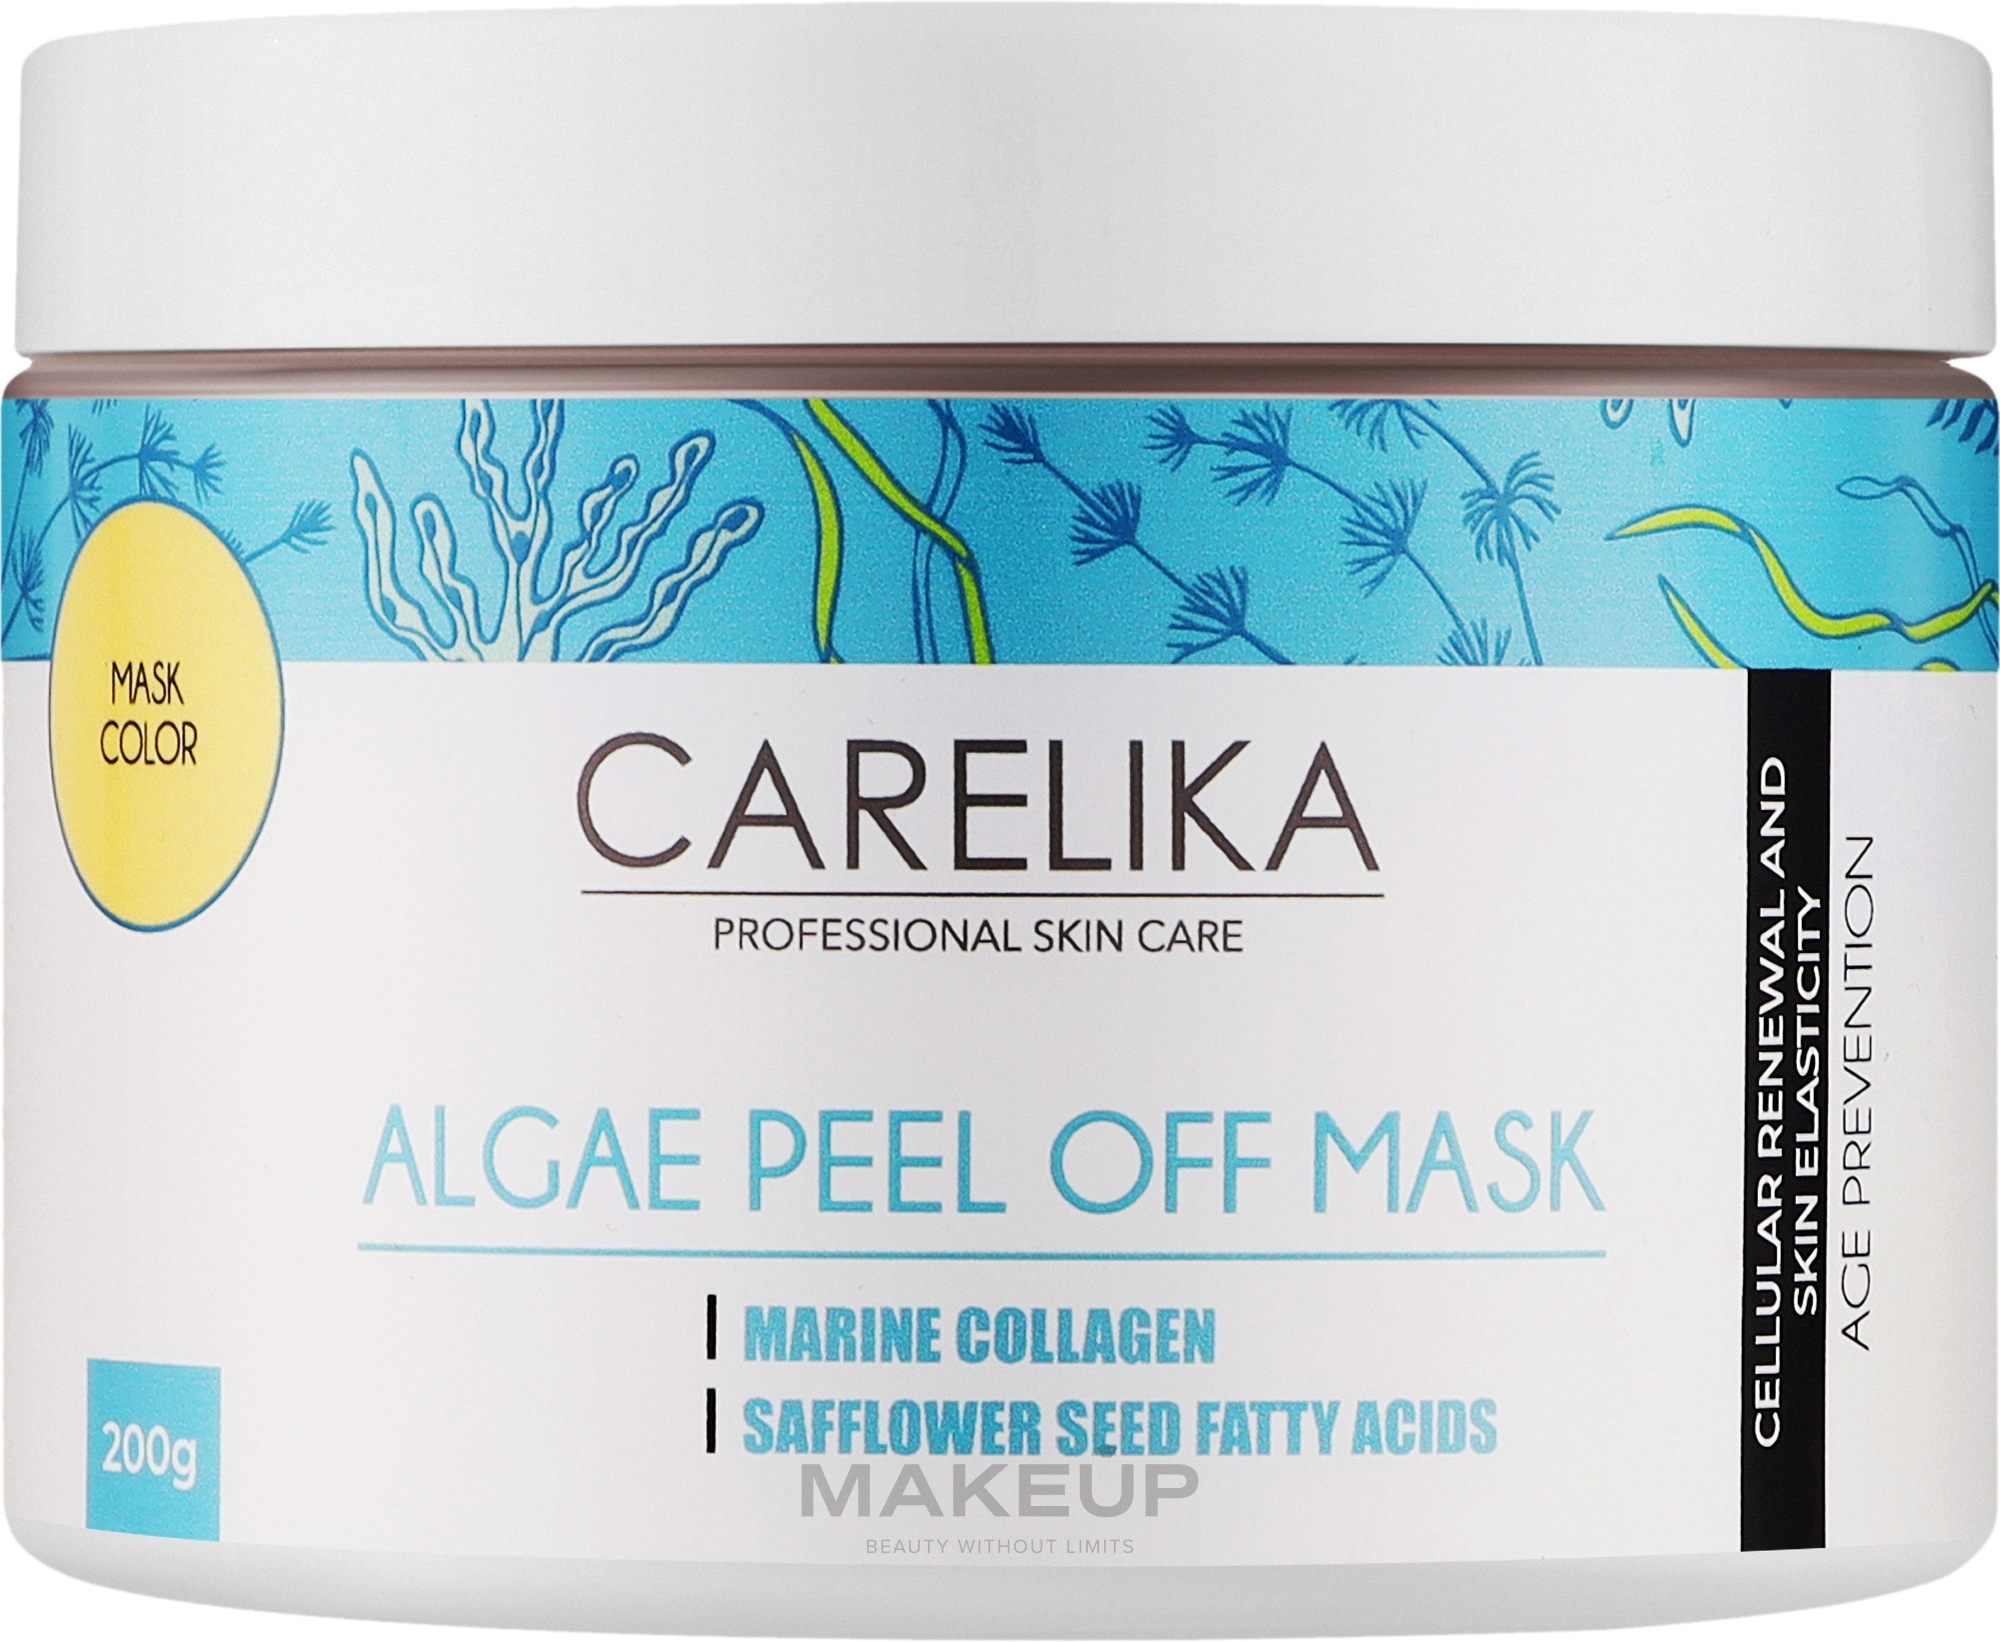 Альгинатная маска на основе водорослей с морским коллагеном - Carelika Algae Peel Off Mask Marine Collagen — фото 200g